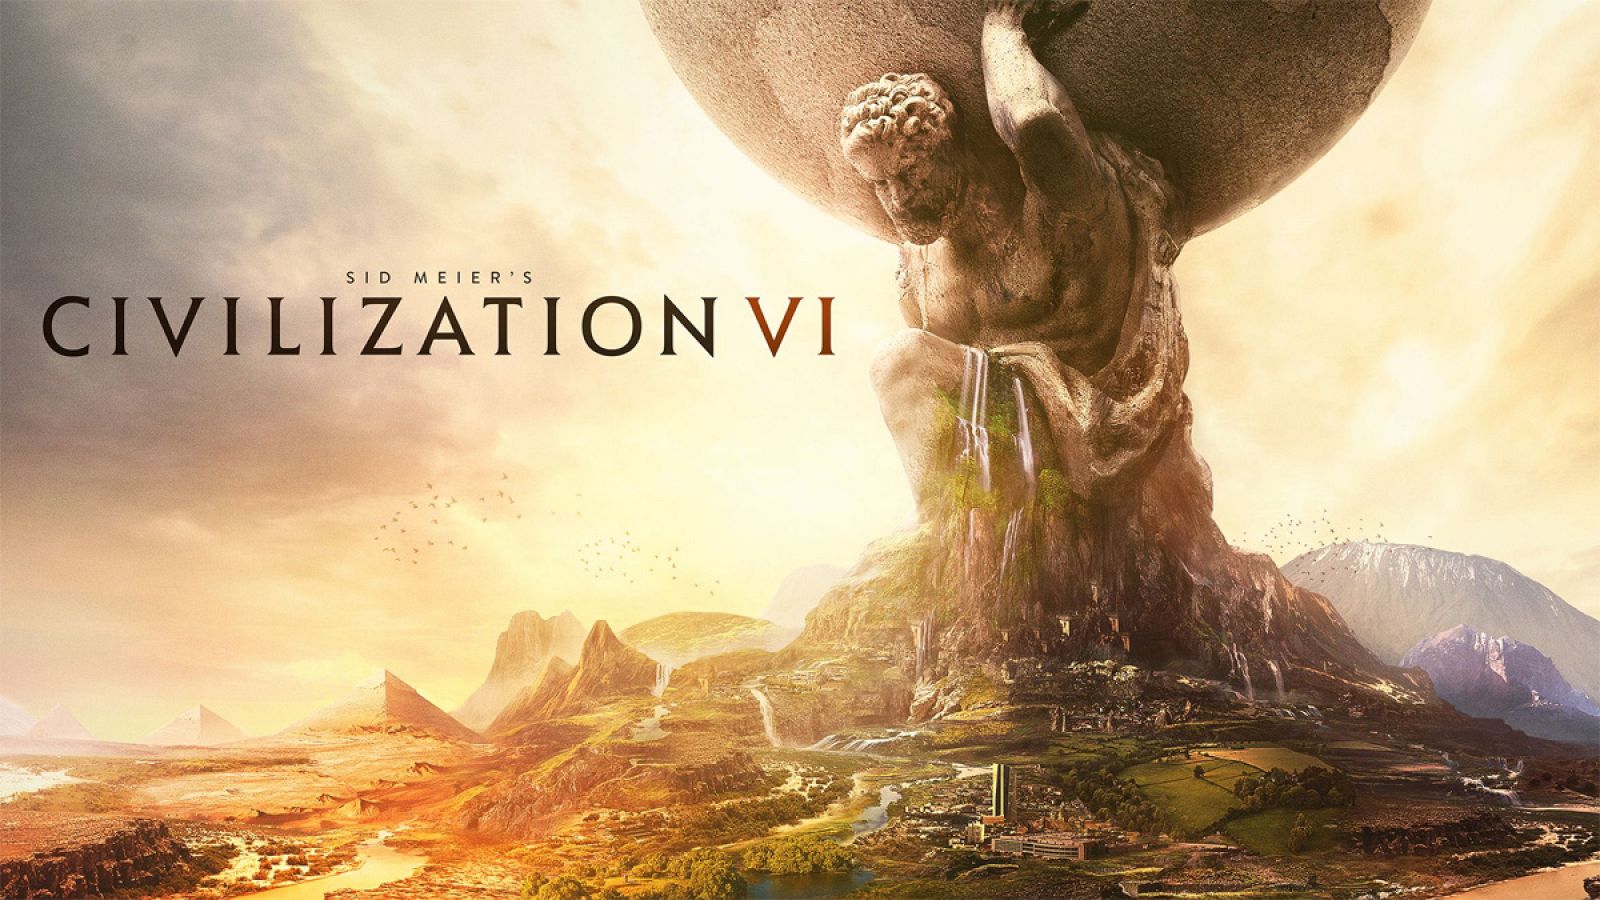 Civilization VI permite de nuevo a los jugadores controlar una nación y dirigirla a través del tiempo.